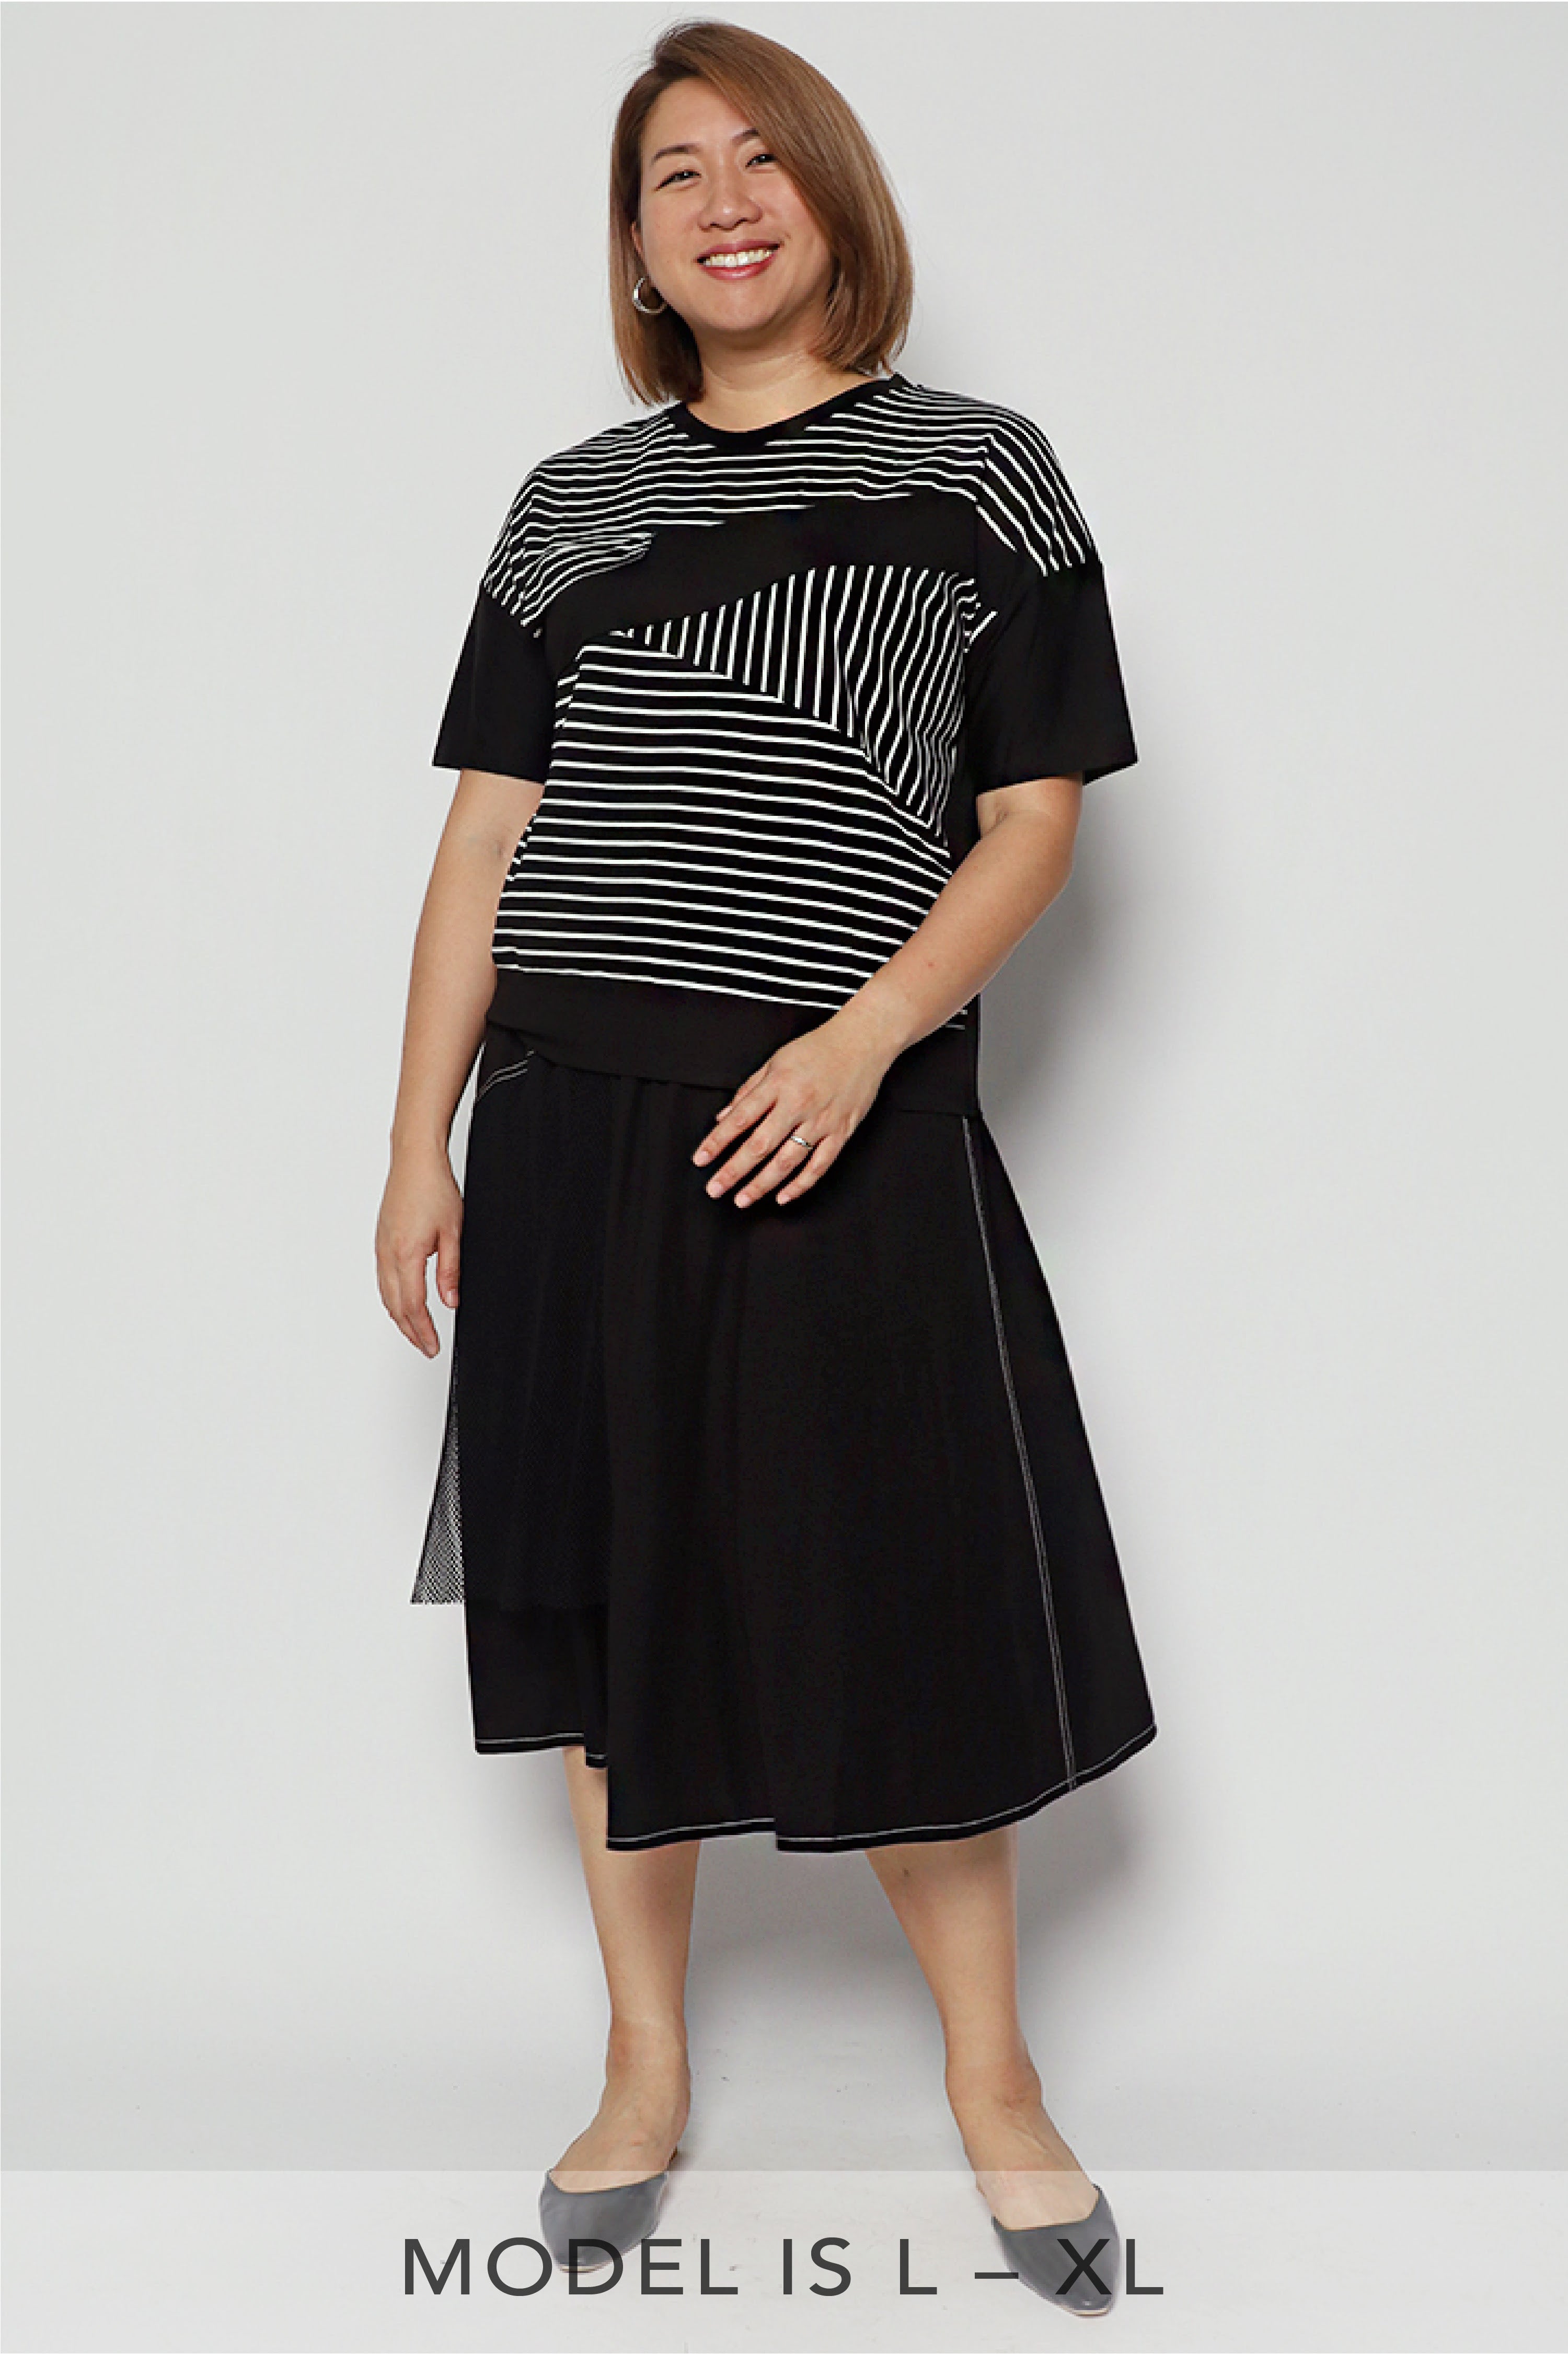 Aretha Skirt in Black